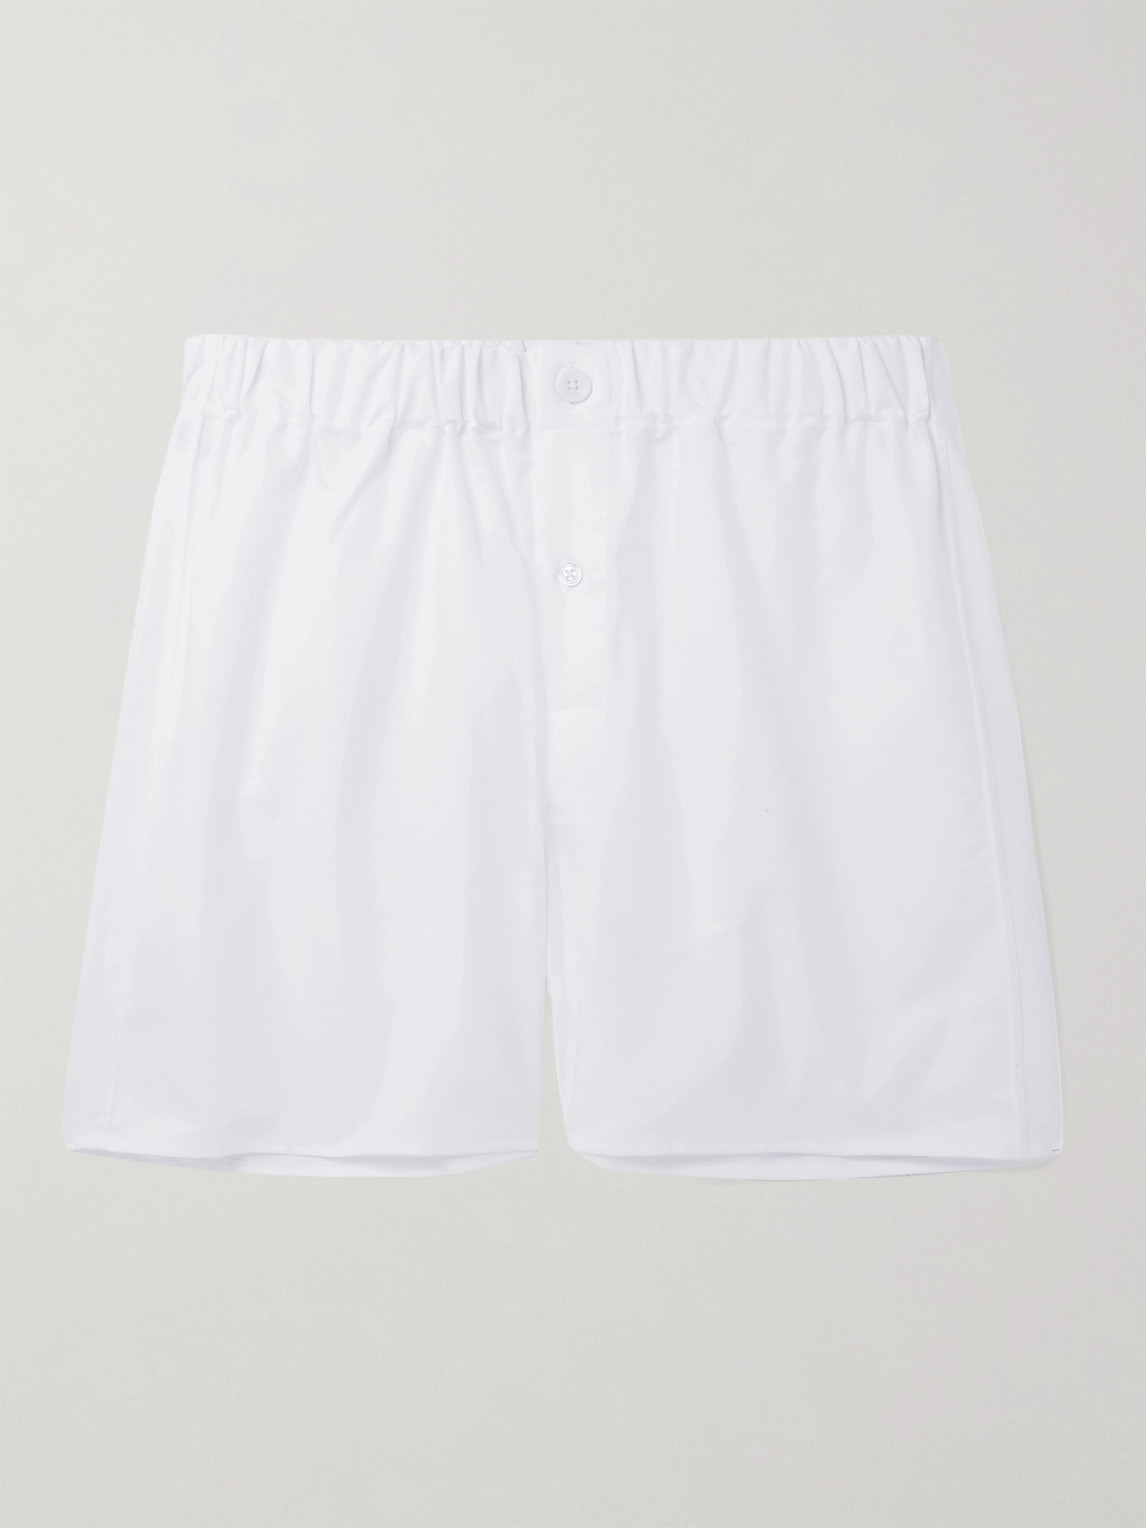 Emma Willis Cotton Oxford Boxer Shorts In White